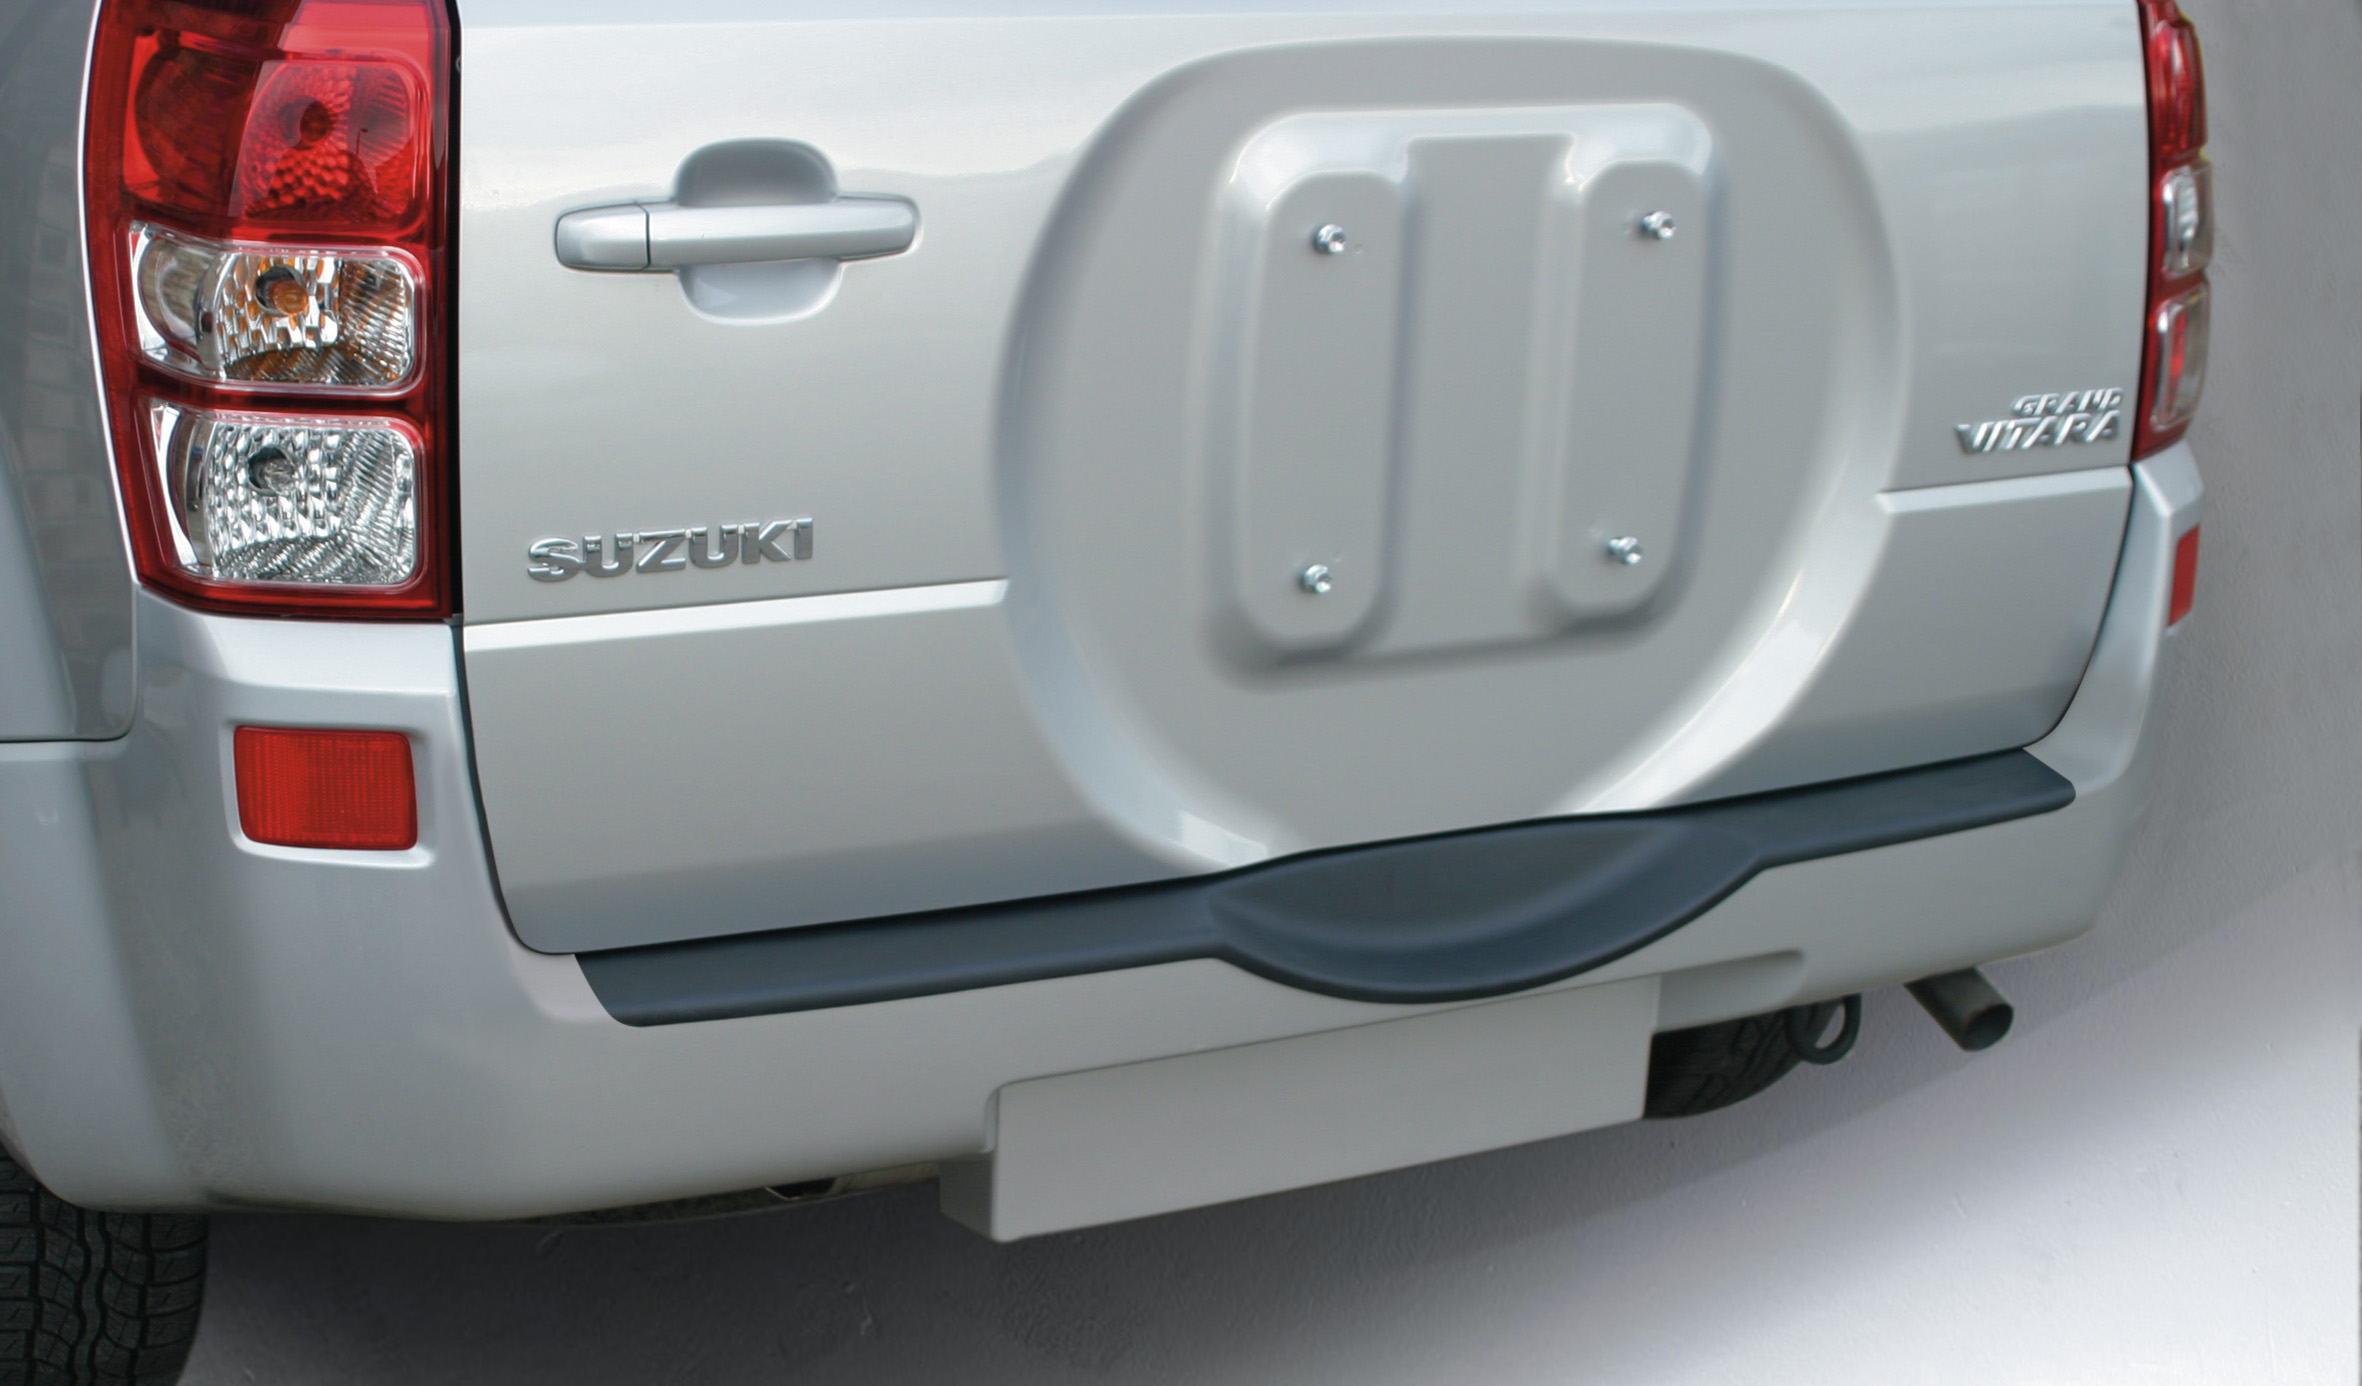 Ladekantenschutz mit Abkantung passend für Suzuki Grand Vitara 3 und 5  Türer ab BJ. 09.2005 bis 02.2015 (nur für Fahrzeuge mit  Reserverad/Radhalter an der Heckklappe) ABS Farbe schwarz | Aroba